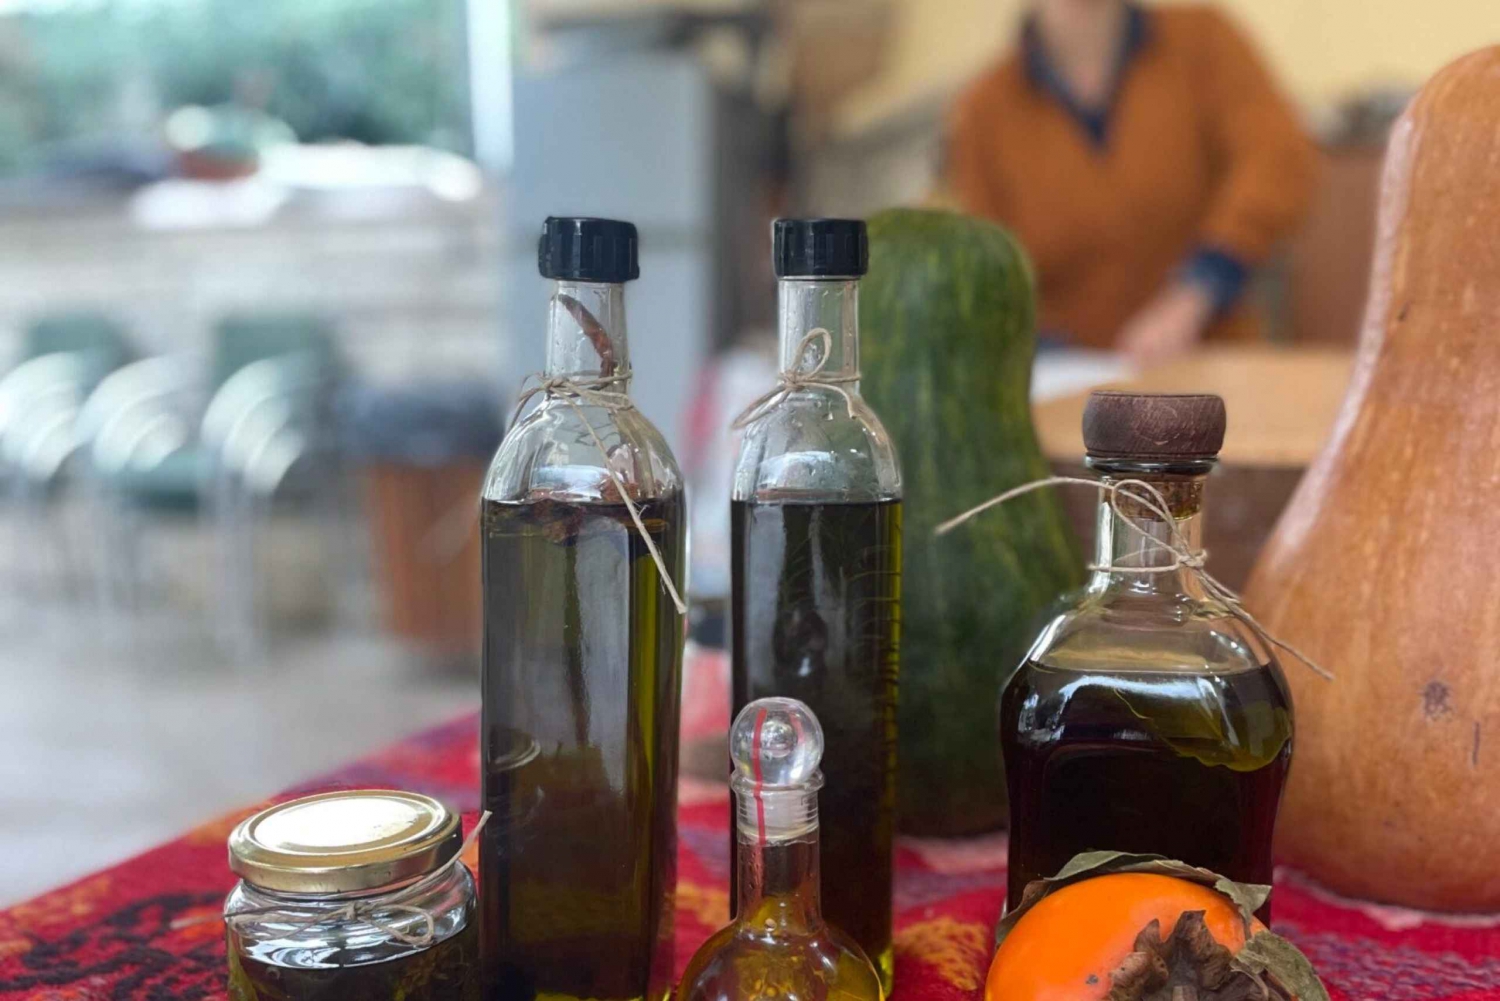 Kurs i surdeigsbakst - prøvesmaking av olivenolje